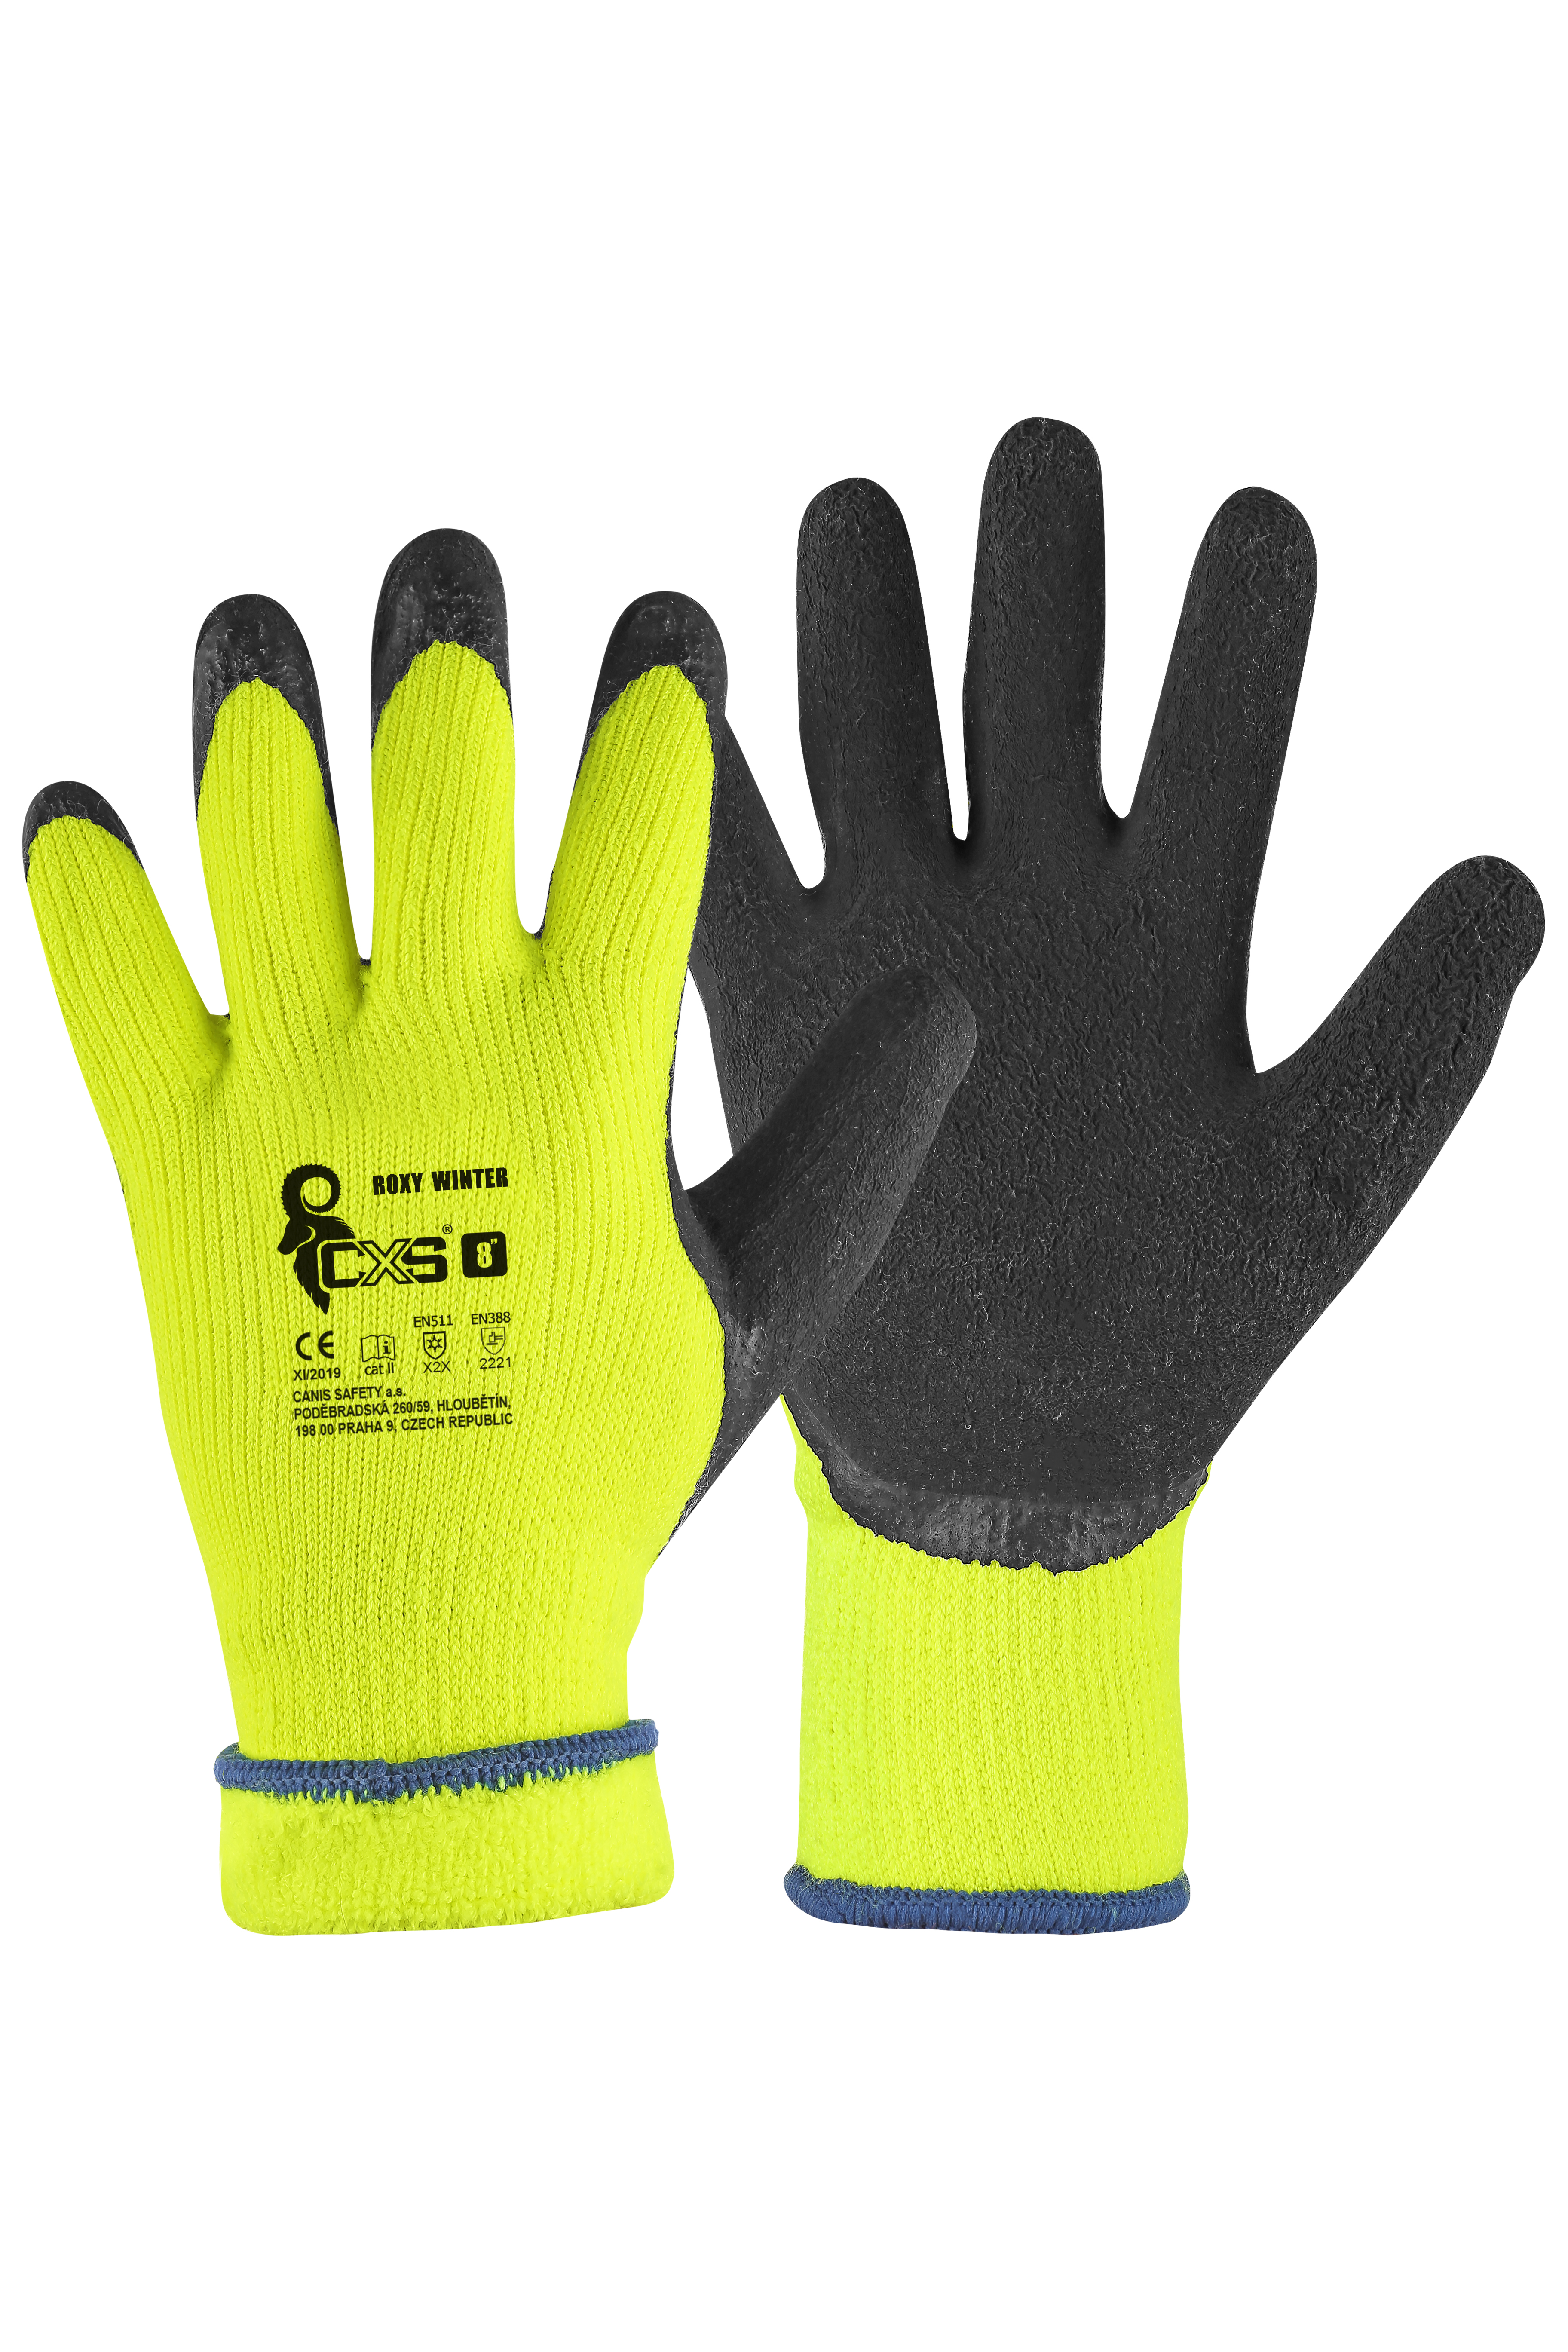 rukavice Roxy Winter, zimní, máčené v latexu, velikost 7 0.10 Kg TOP Sklad4 606066 128